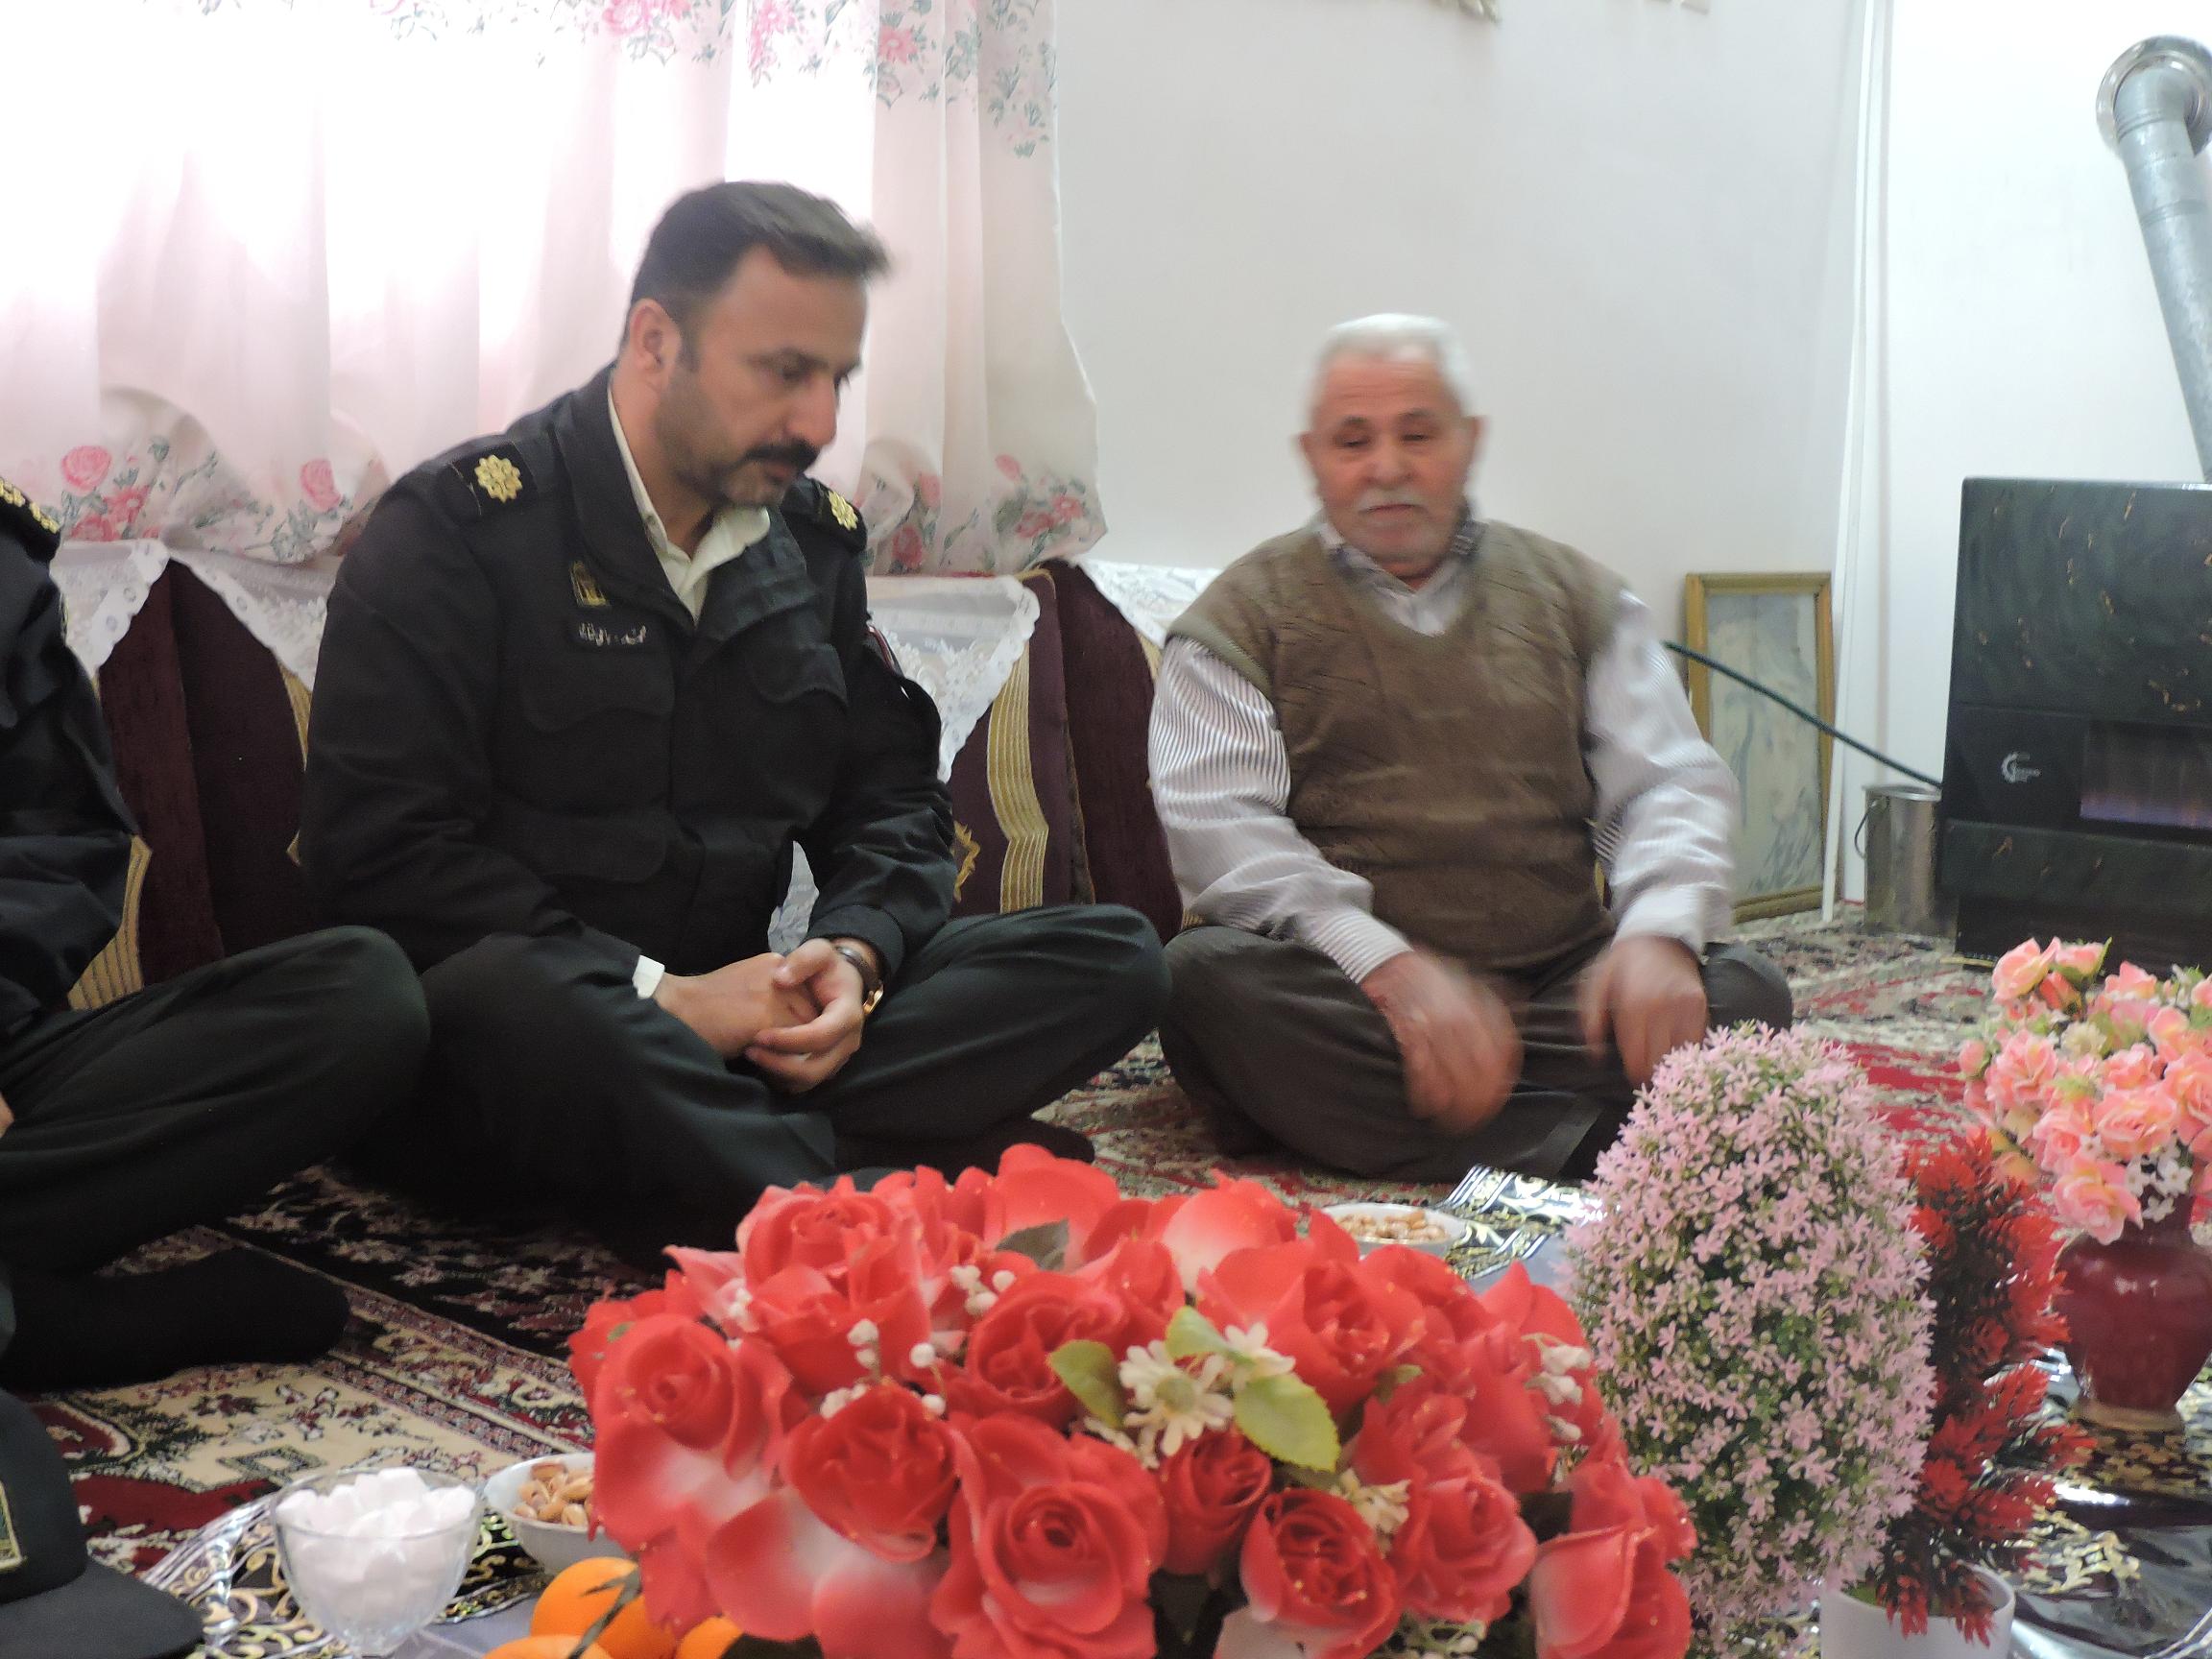 فرمانده انتظامی شهرستان سیمرغ / دیدار با خانواده شهدا پشتوانه معنوی پلیس است